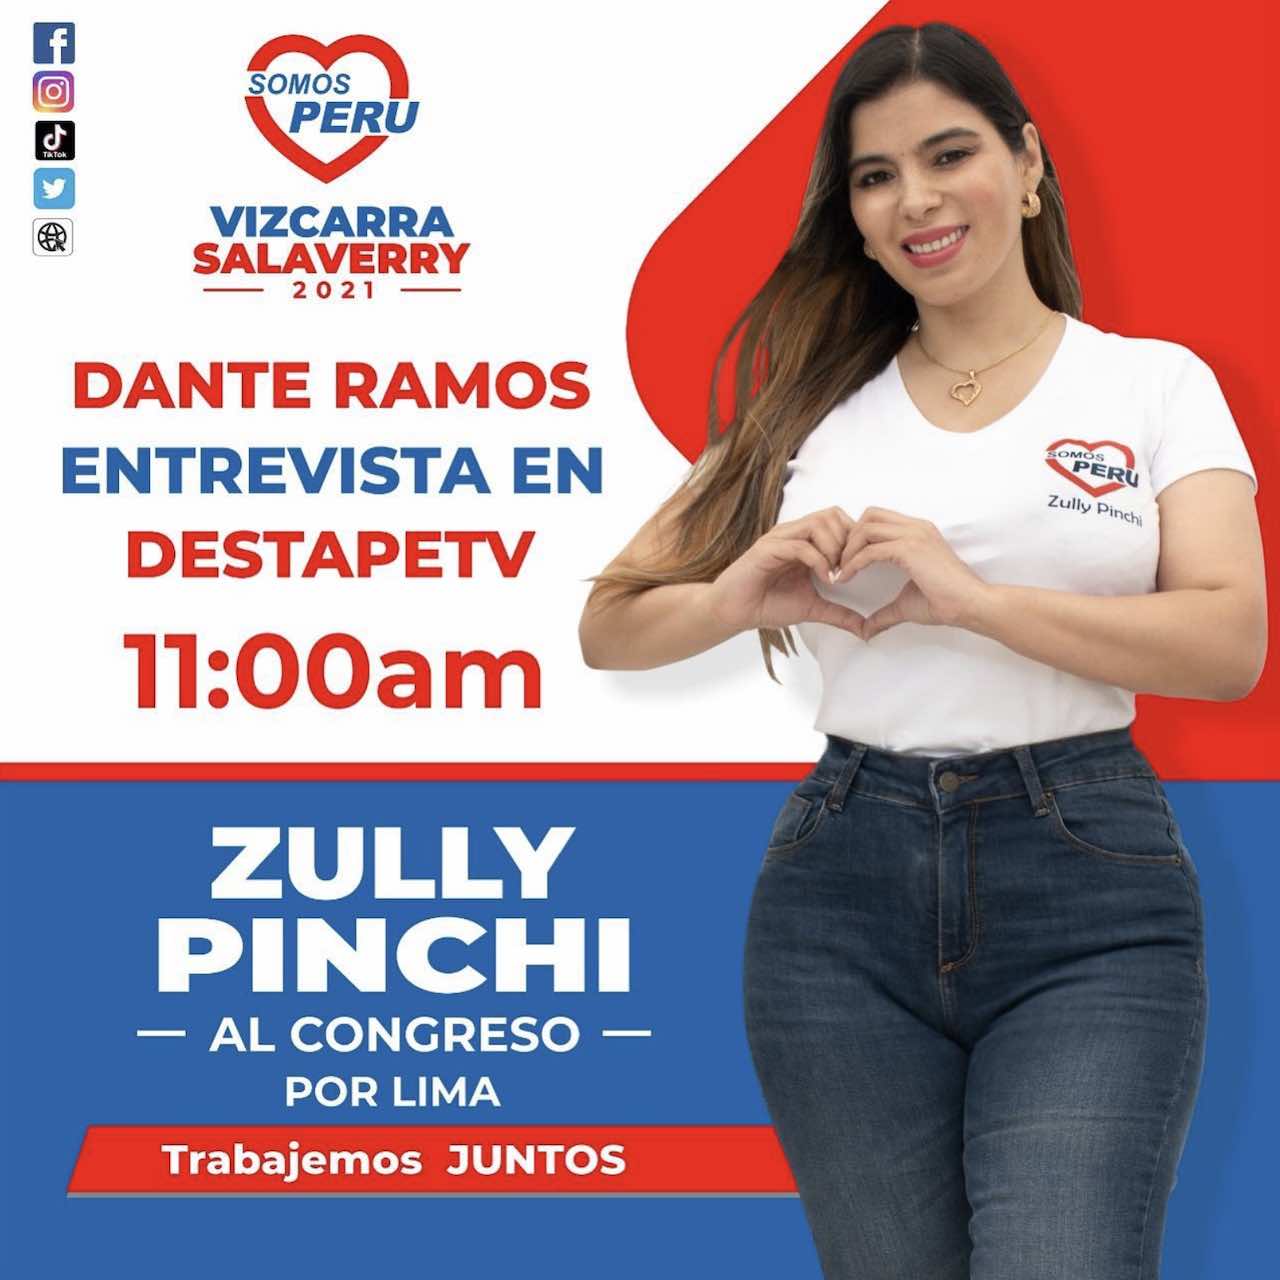 Zully Pinchi Campaña Congreso Perú